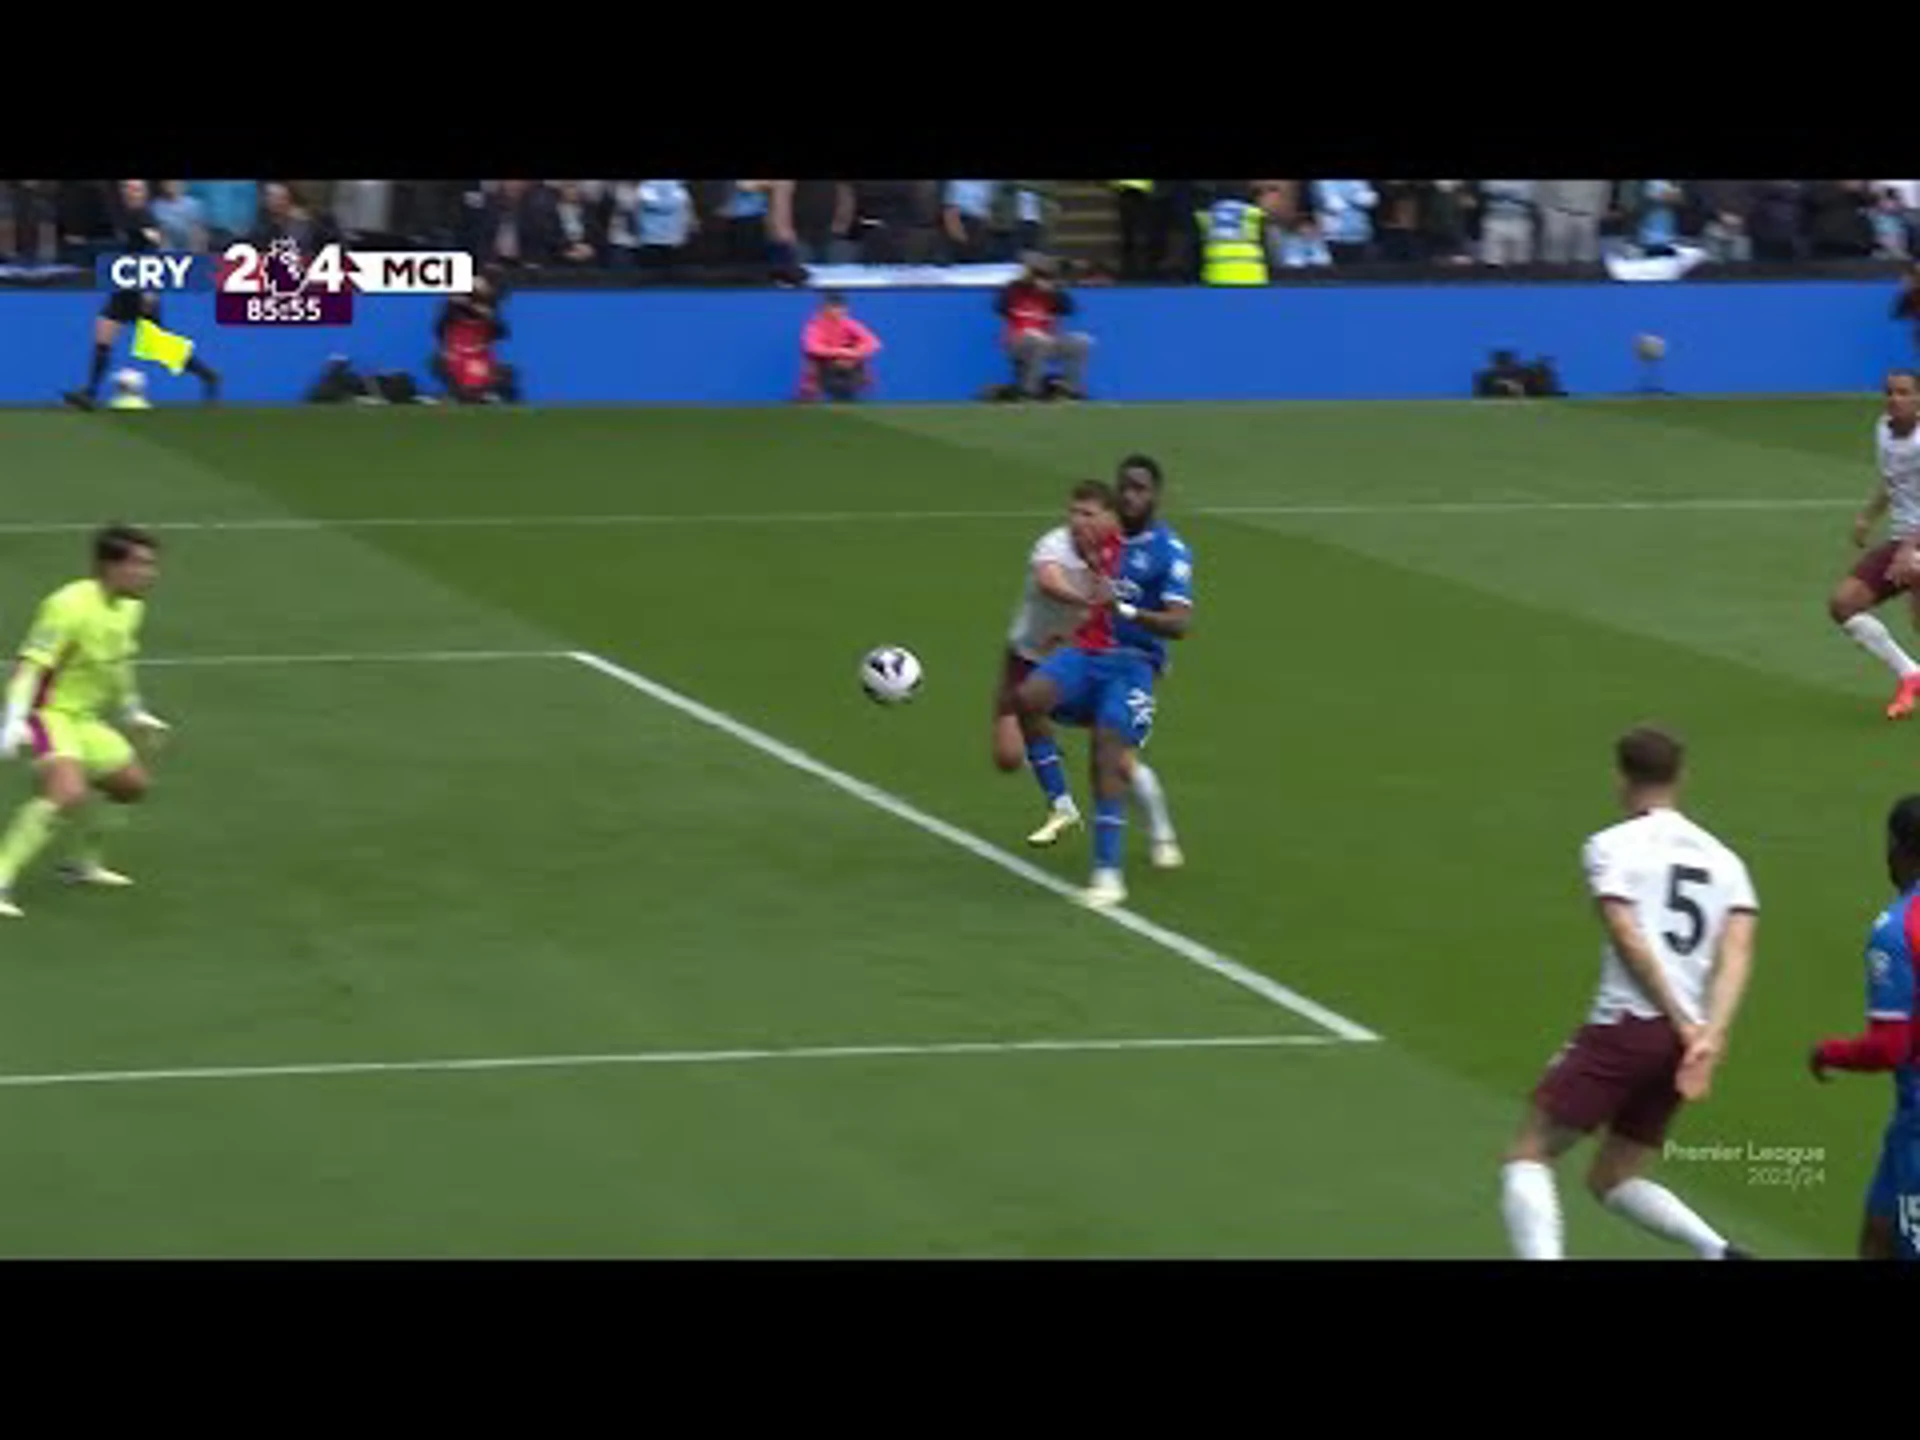 Odsonne Édouard | 86ᵗʰ Minute Goal v Manchester City